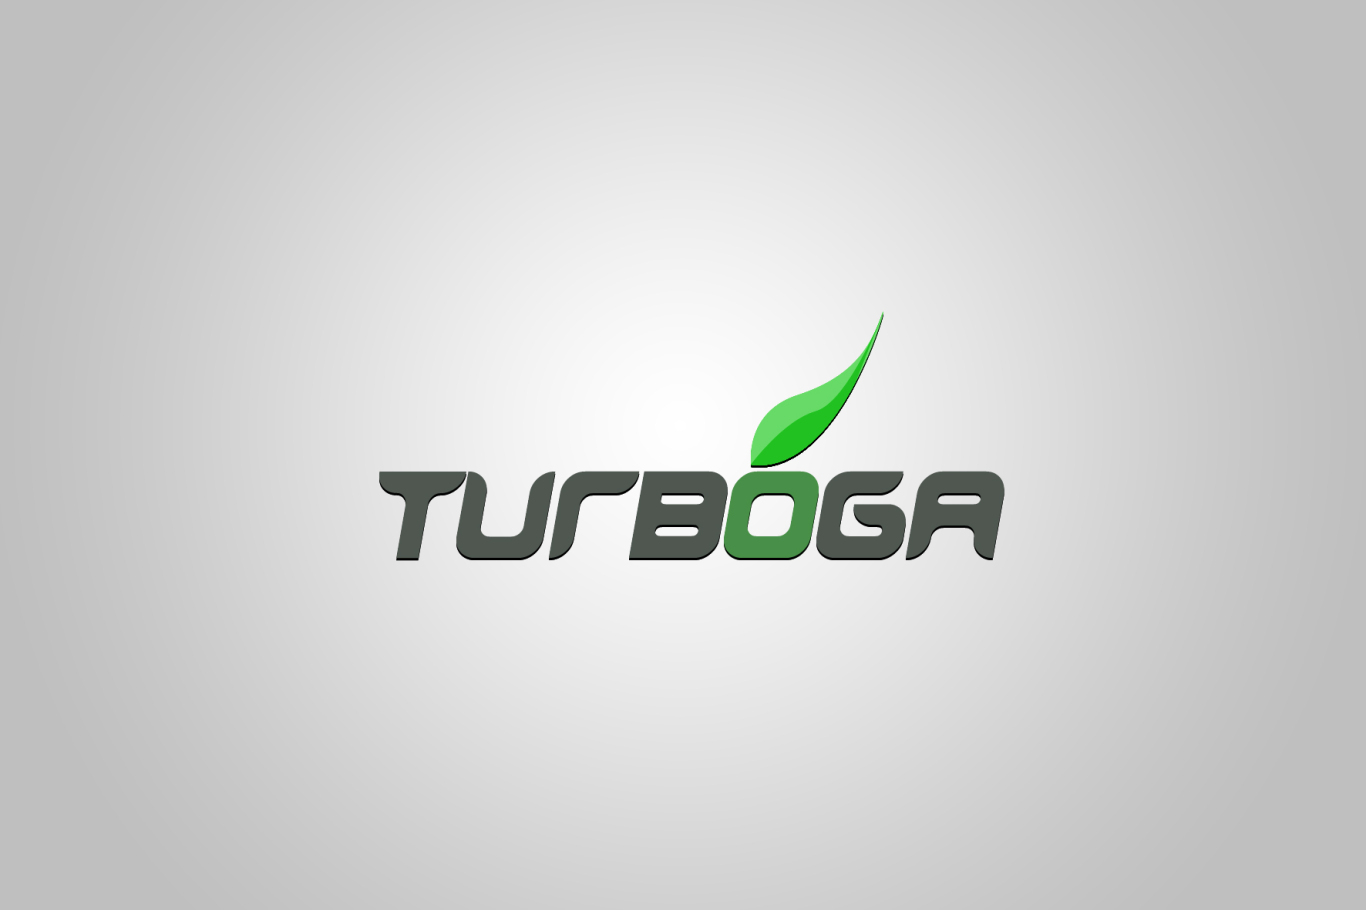 TURBOGA商标设计LOGO设计应用图0